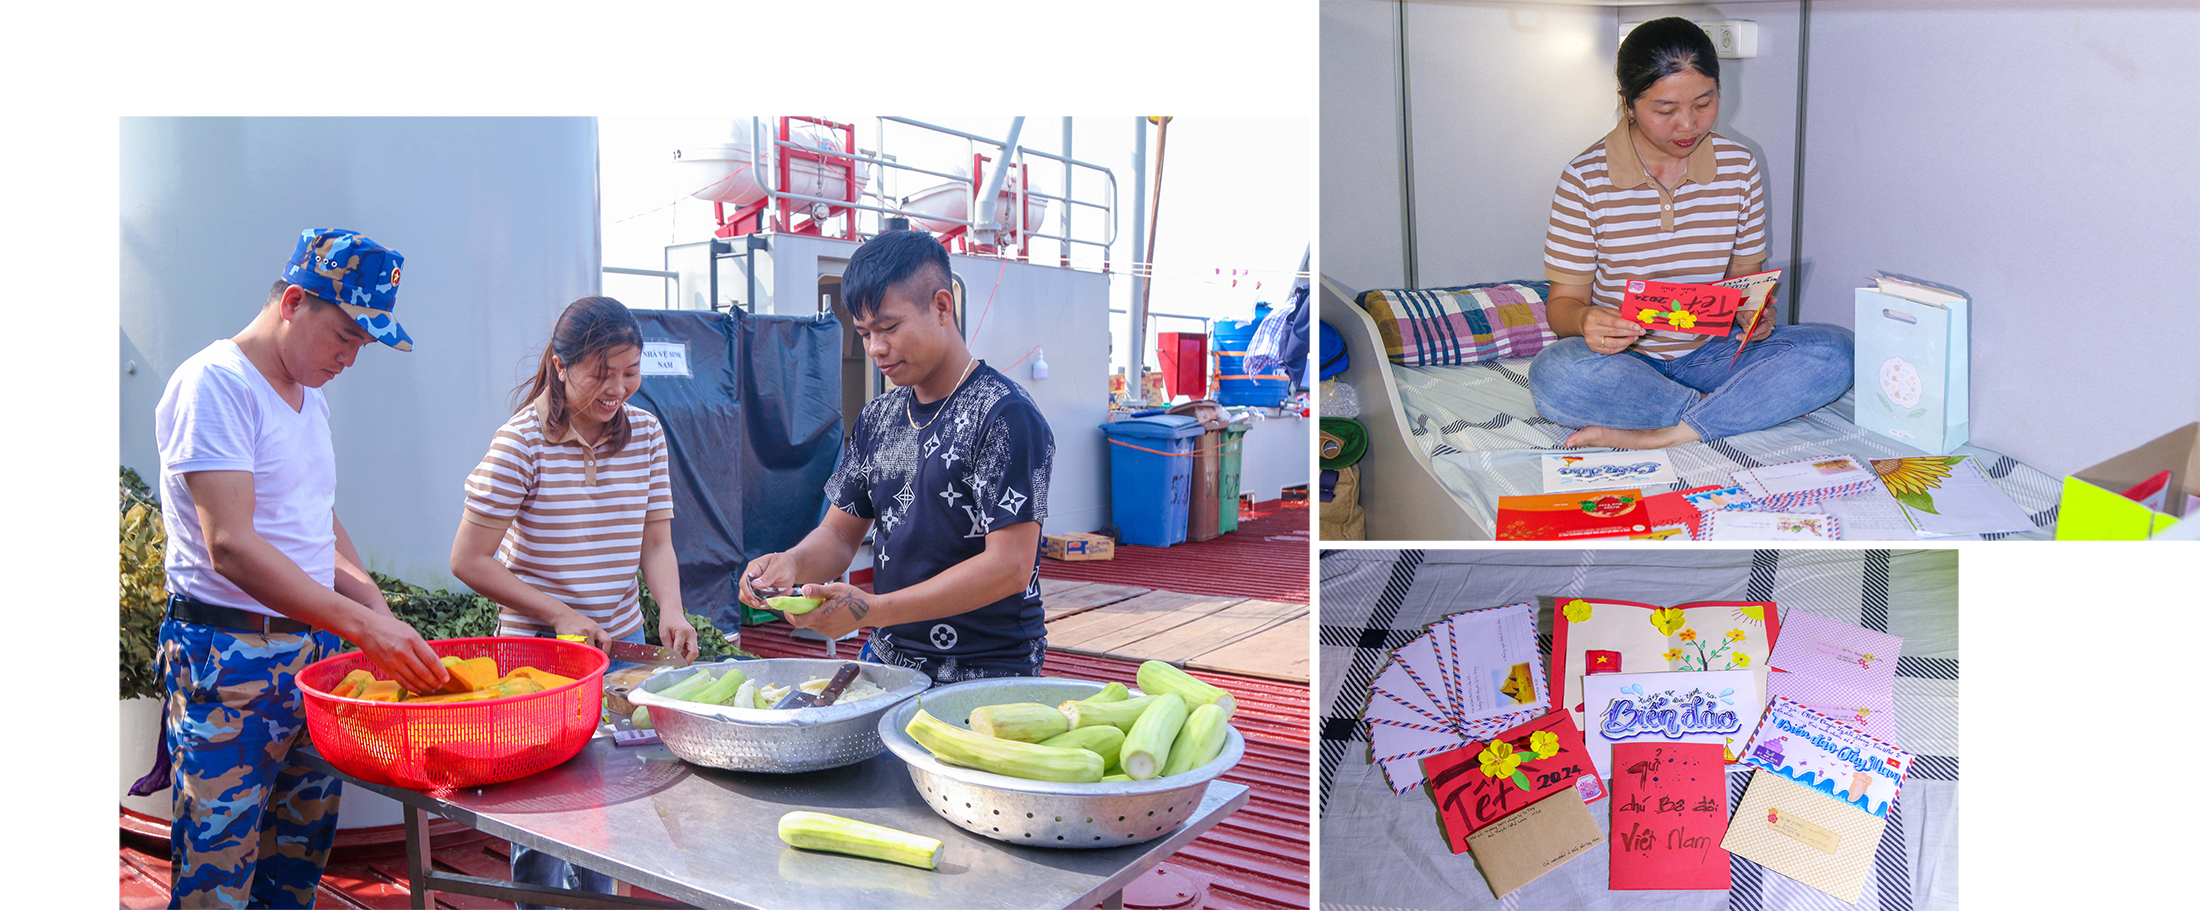 Nhà báo Trần Thị Bích Chi giúp các chiến sĩ chuẩn bị bữa tối trên tàu; Nhà báo Trần Thị Bích Chi soạn những bức thư “nối biển gần bờ” ở trên tàu 528.